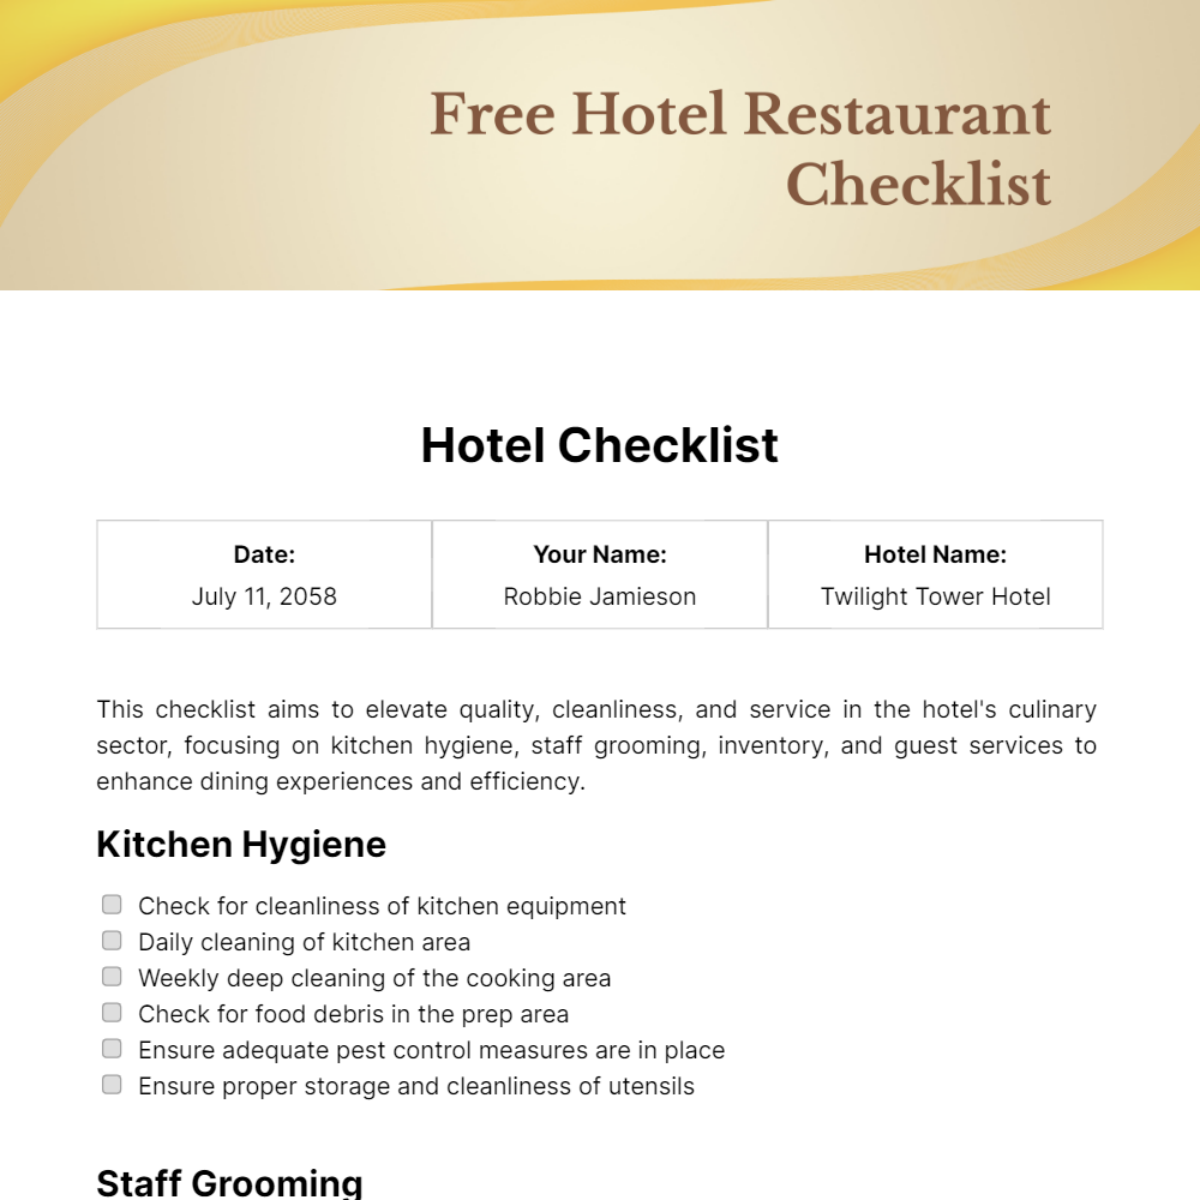 Free Hotel Restaurant Checklist Template